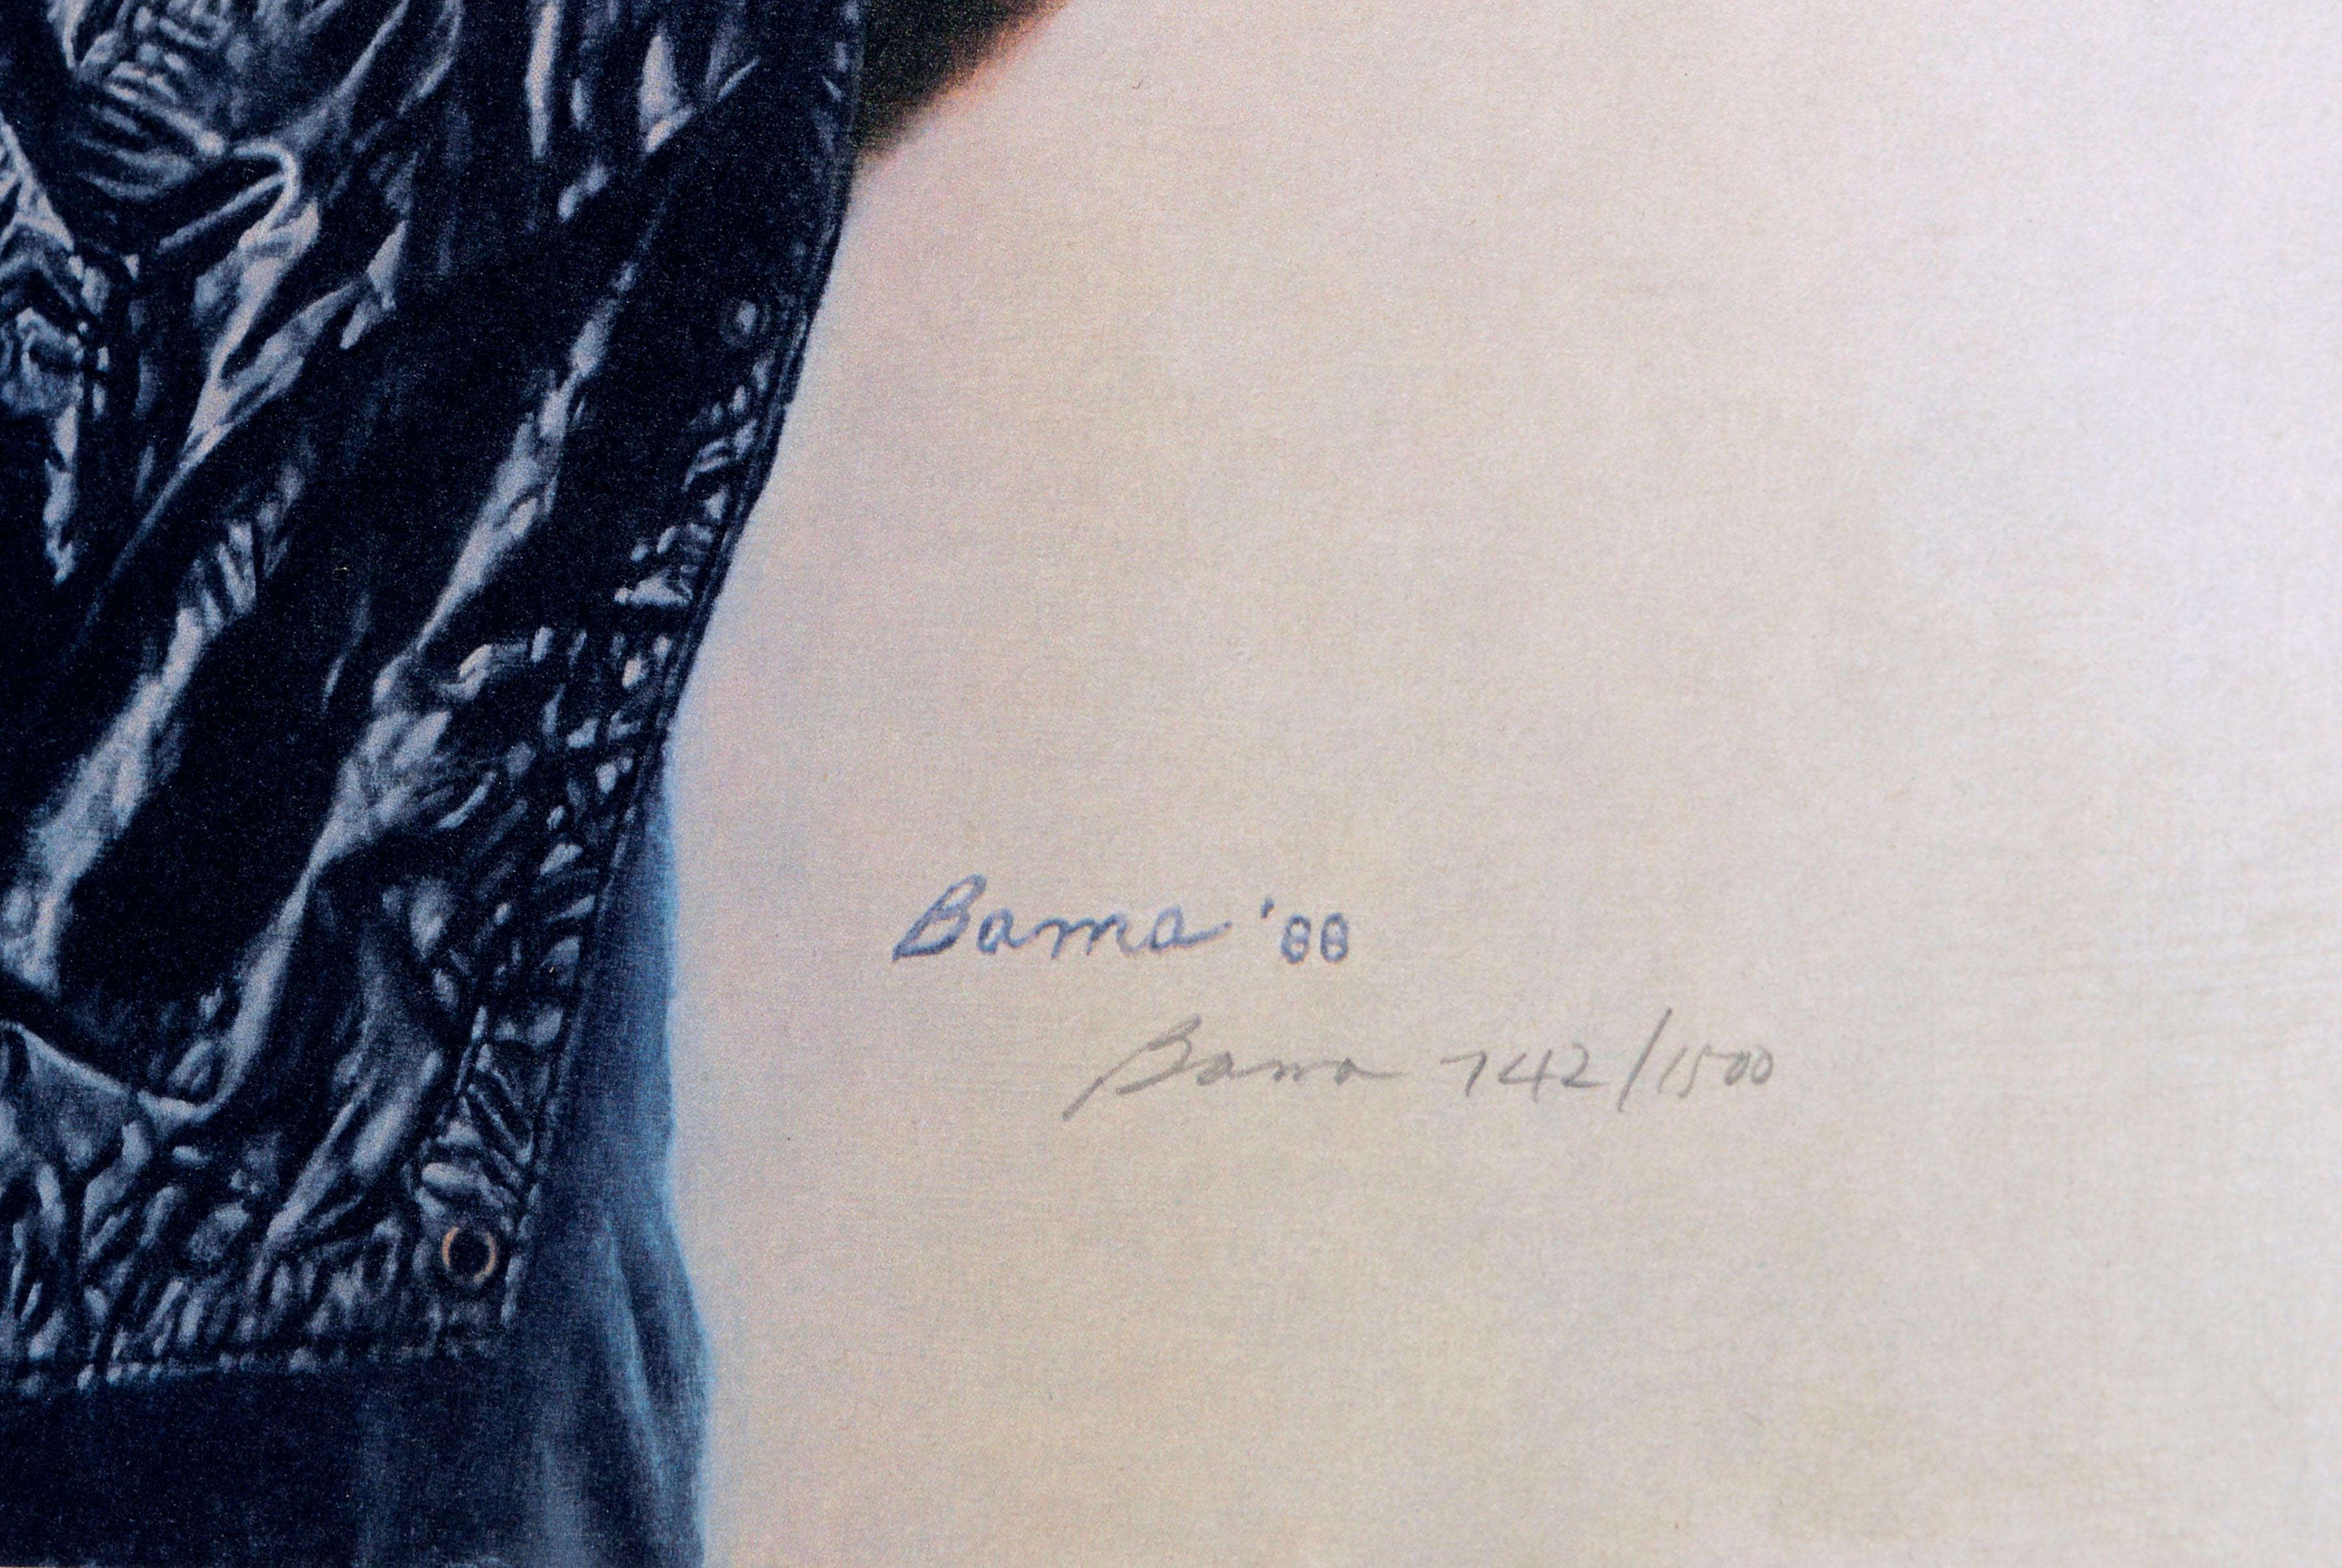 Limitierter Offsetdruck des originalen fotorealistischen Gemäldes, ein Porträt, das eine historische Nachstellung eines Bürgerkriegsfreiwilligen von James Bama (Amerikaner, geb. 1926) zeigt. Handsigniert und nummeriert 